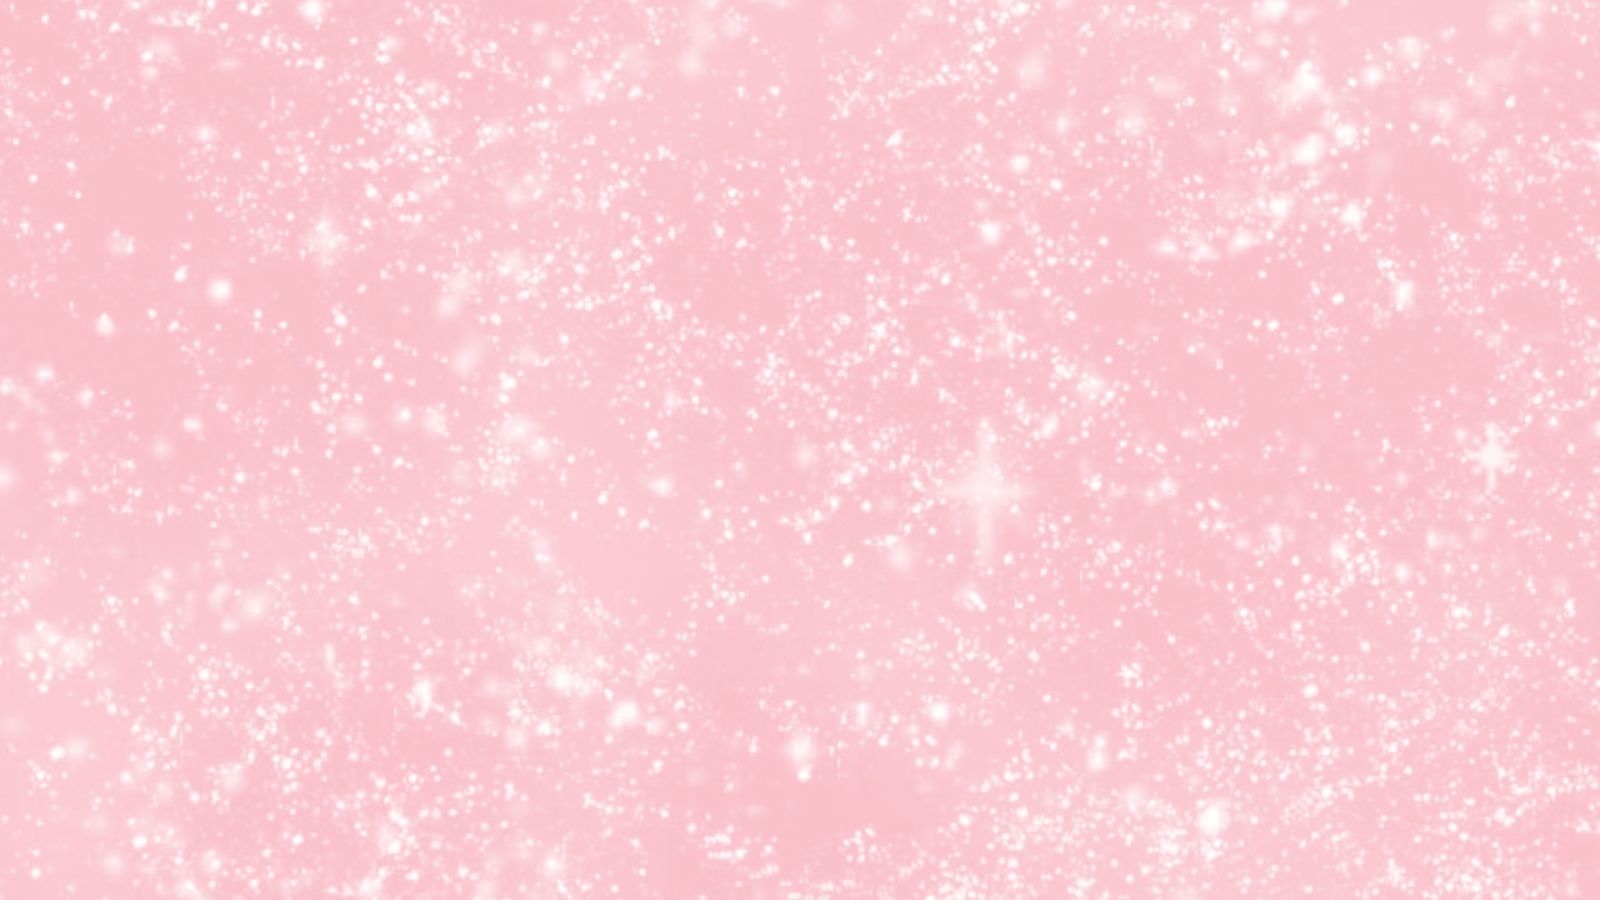 Free download pink wallpaper pink wallpaper tumblr [1955x1960]